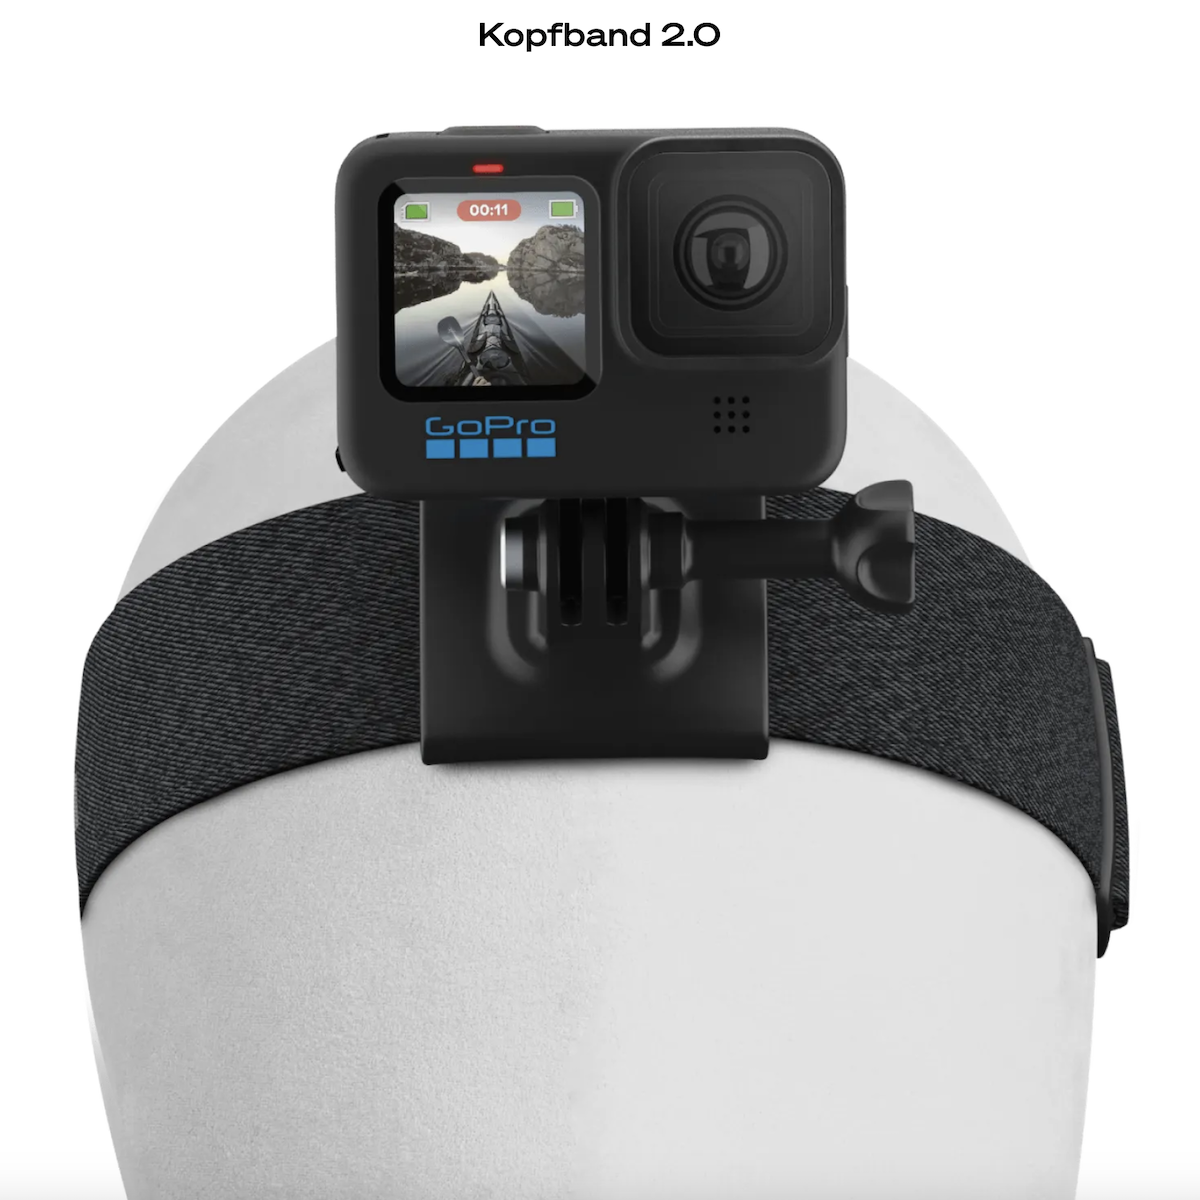 GoPro Kopfband 2.0